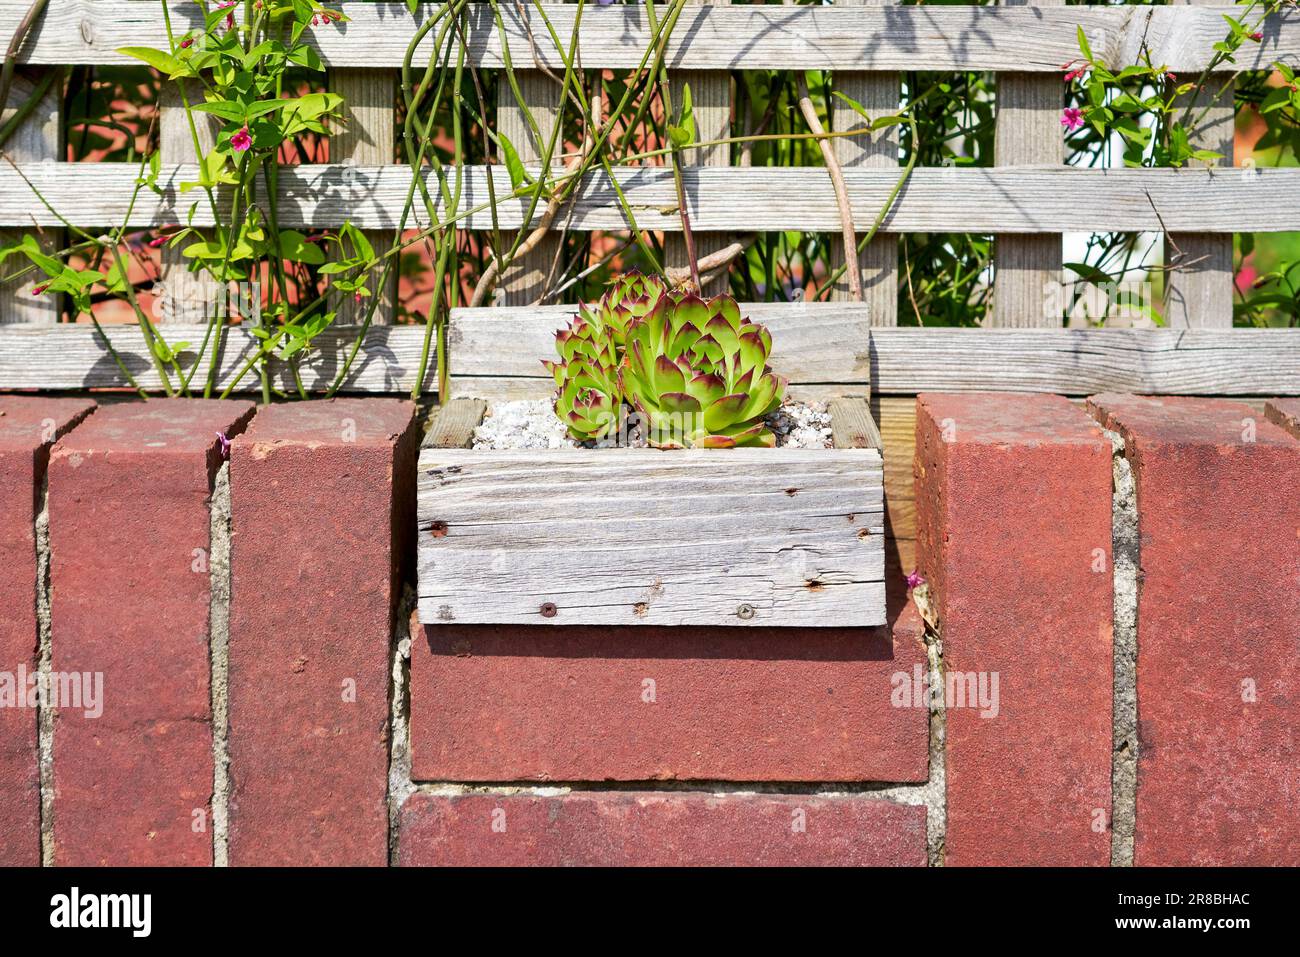 Petite boîte en bois contenant une plante succulente placée au sommet d'un mur en brique rouge avec des plantes et des treillis derrière Banque D'Images